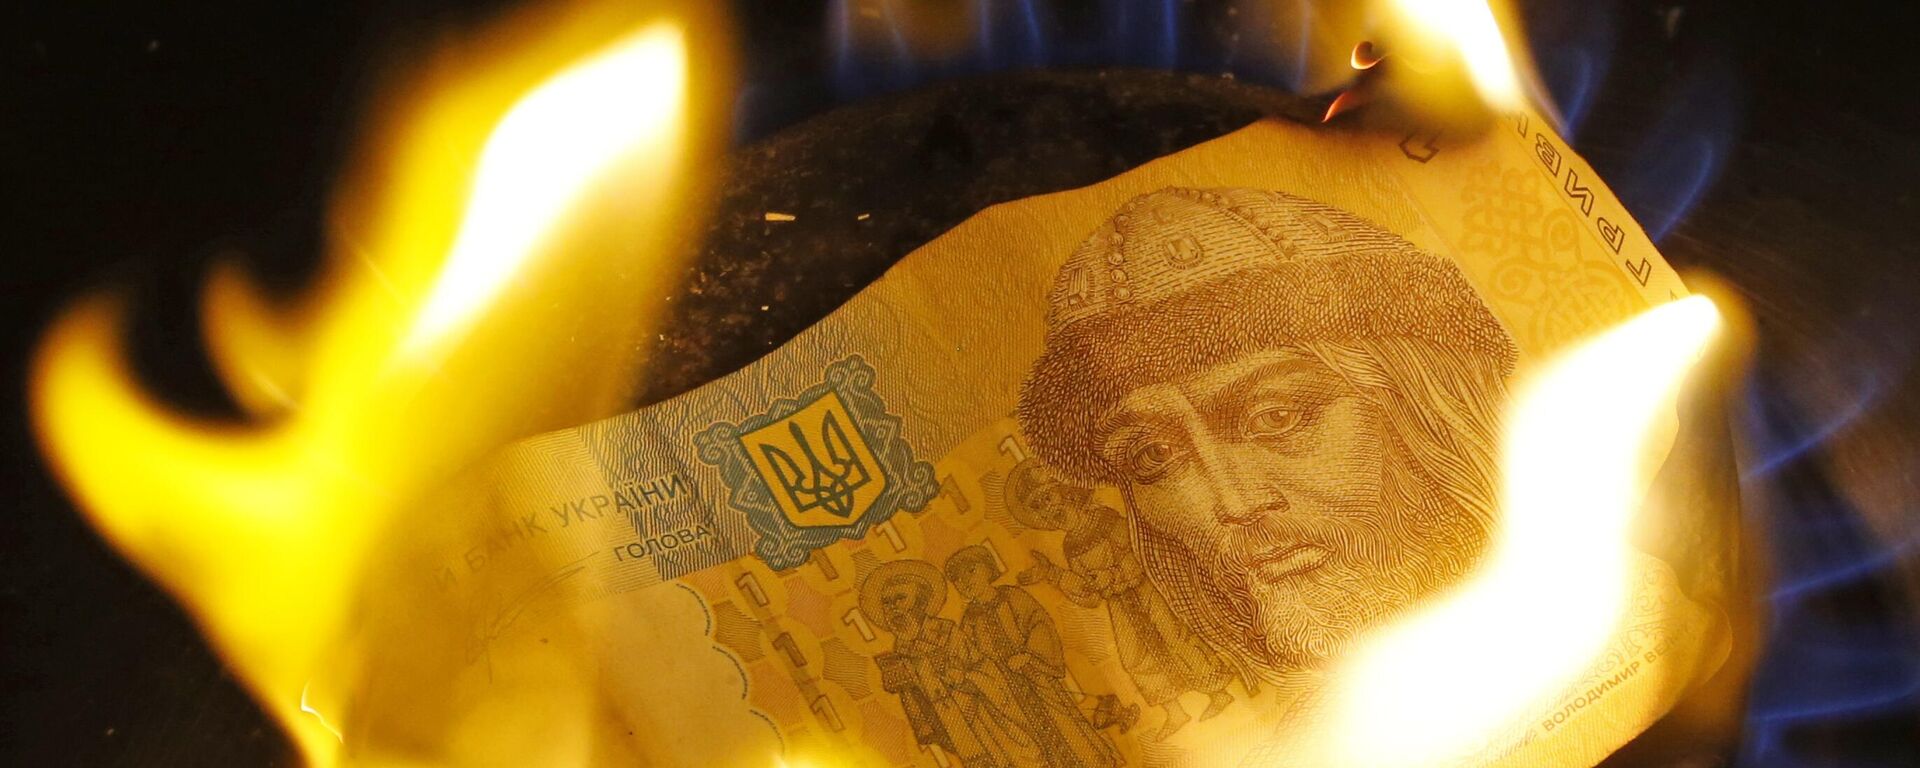 Una grivna ucraniana en llamas (imagen referencial) - Sputnik Mundo, 1920, 31.03.2023